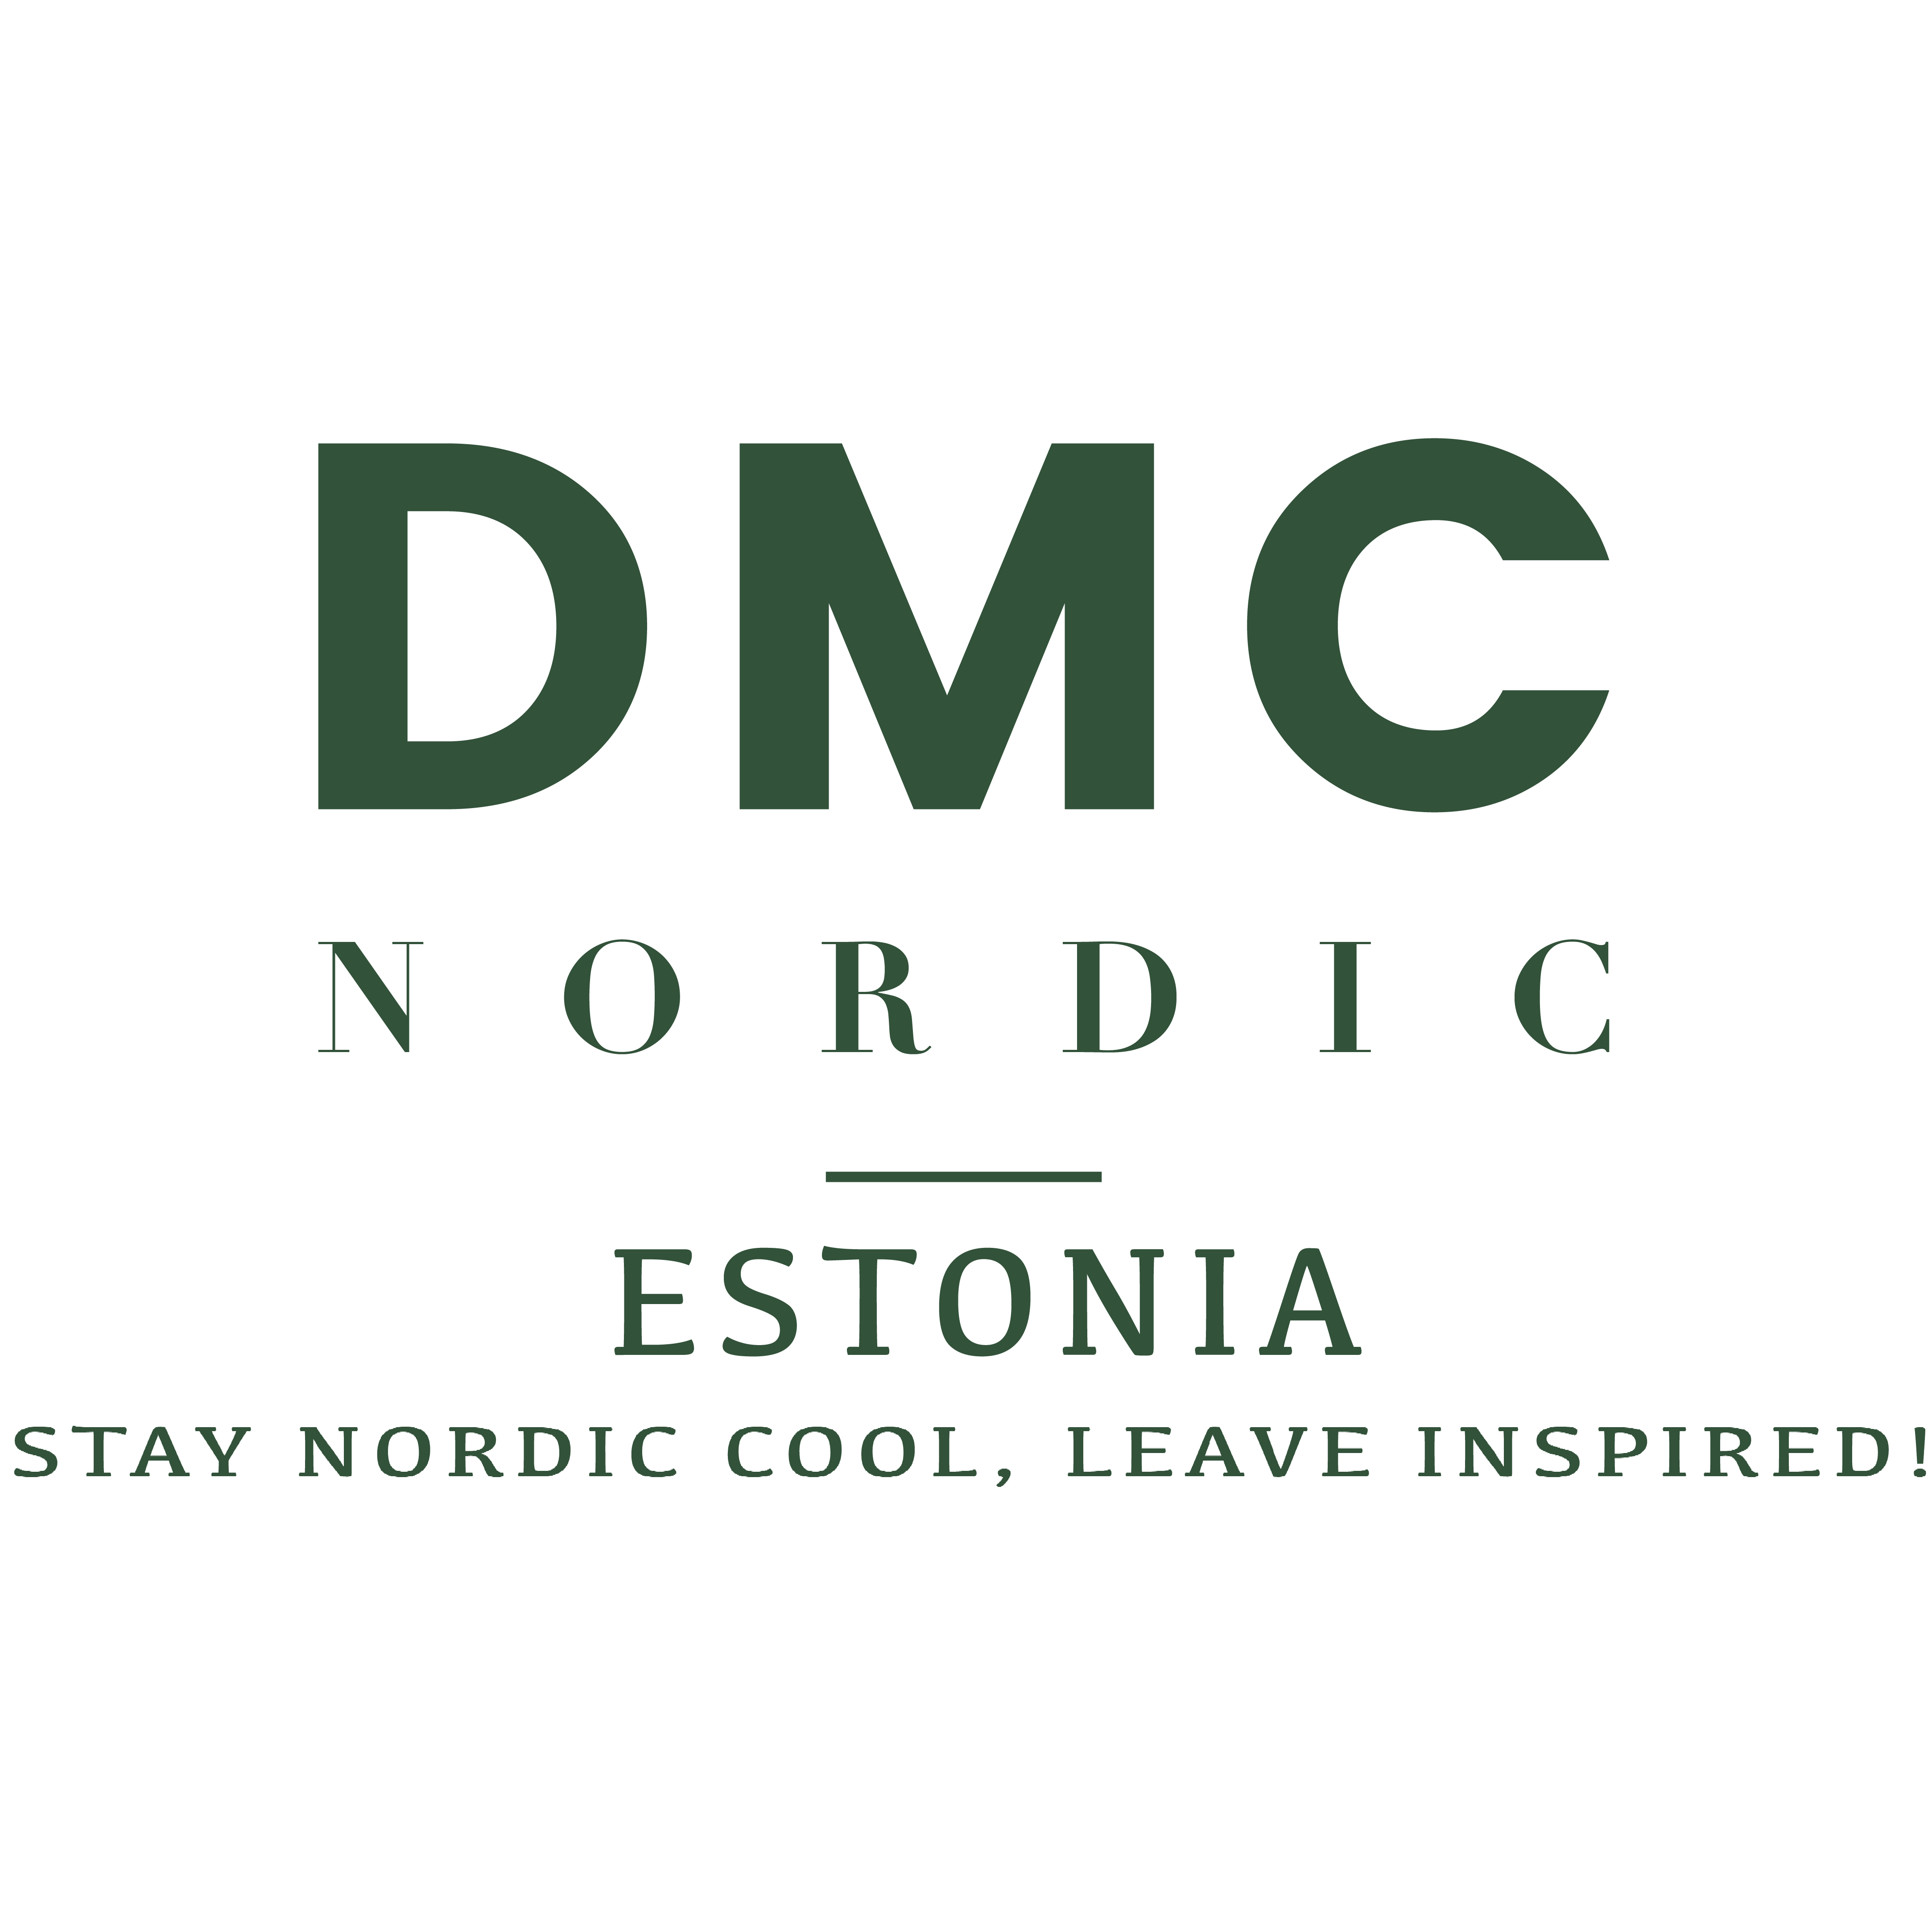 DMC Nordic Estonia